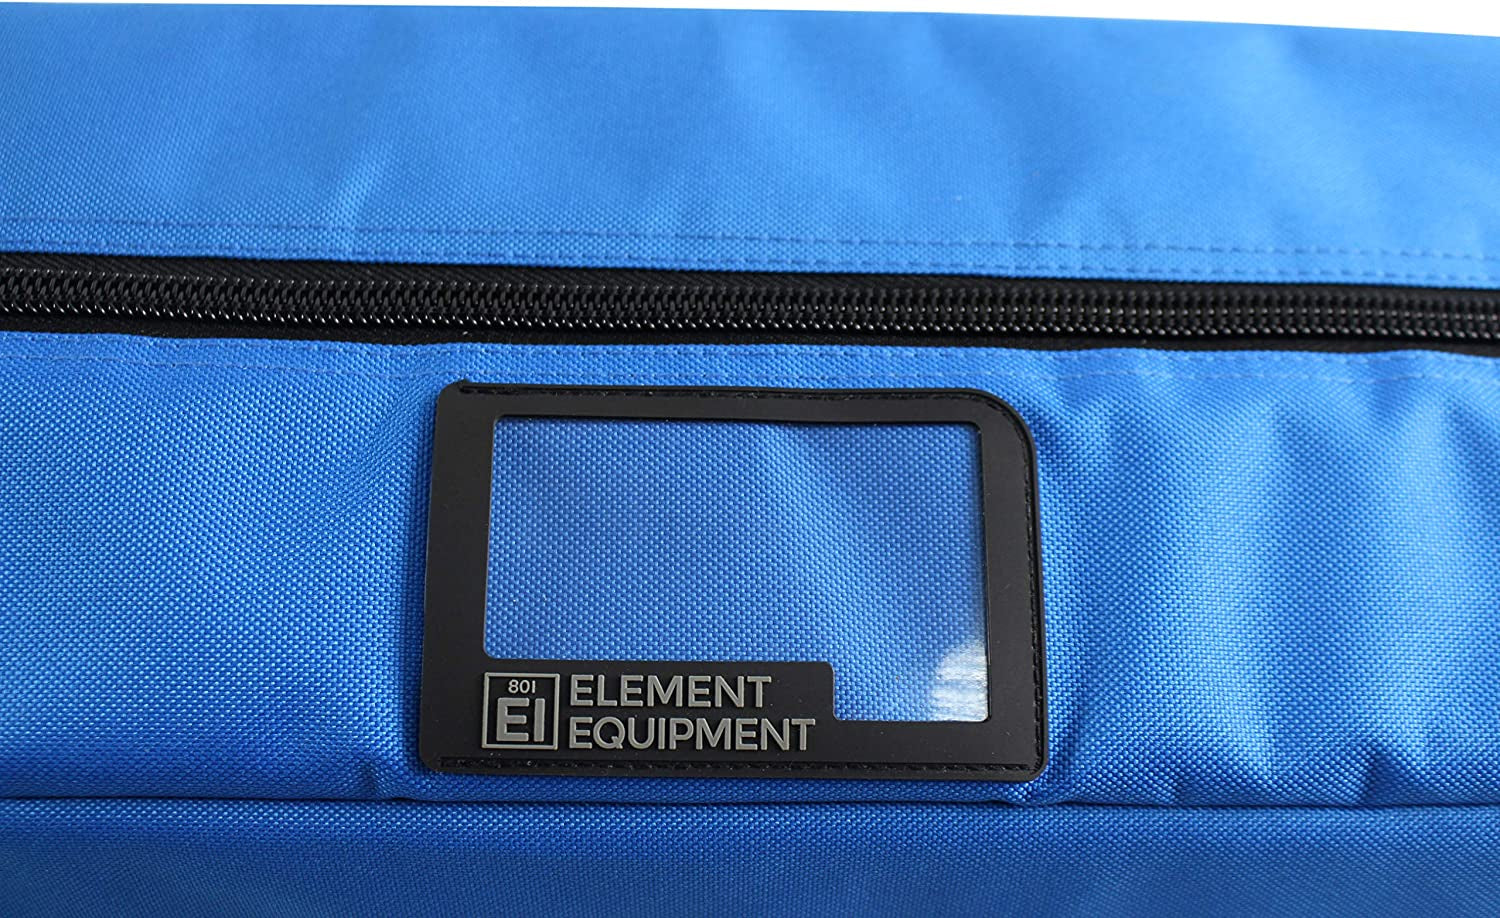 Element Equipment Deluxe Padded Ski Bag Single - Premium High End Travel Bag